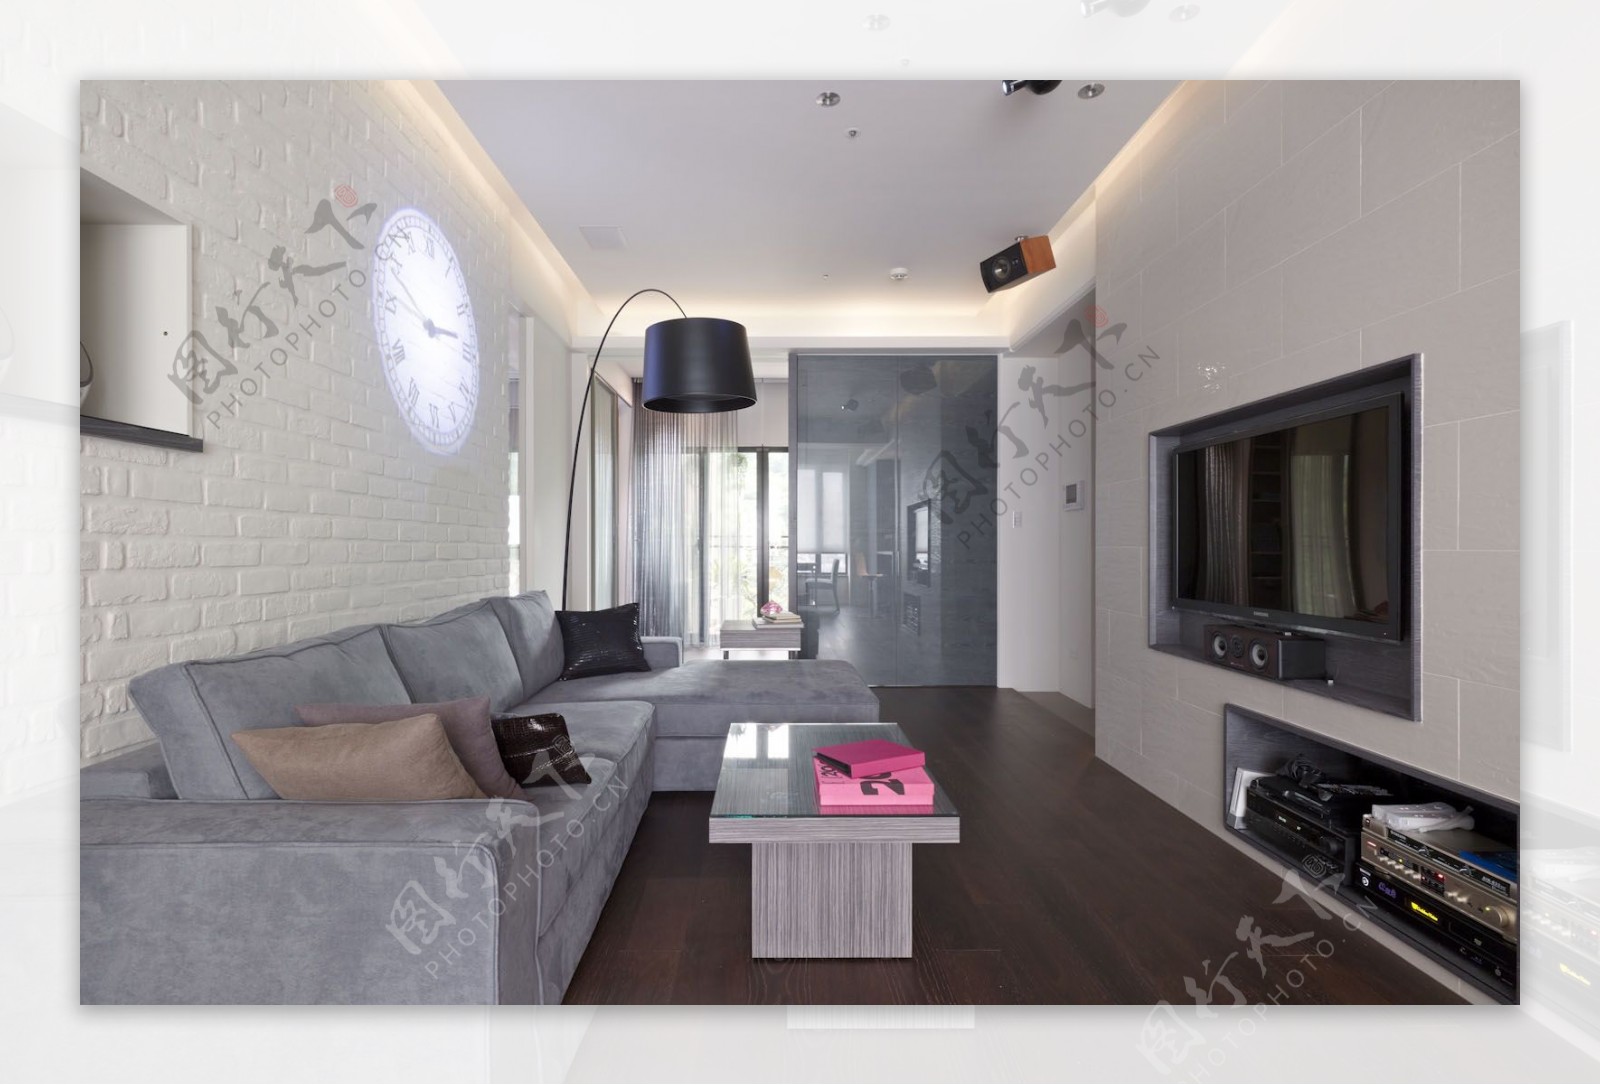 北欧清新时尚客厅灰色沙发室内JPEG图